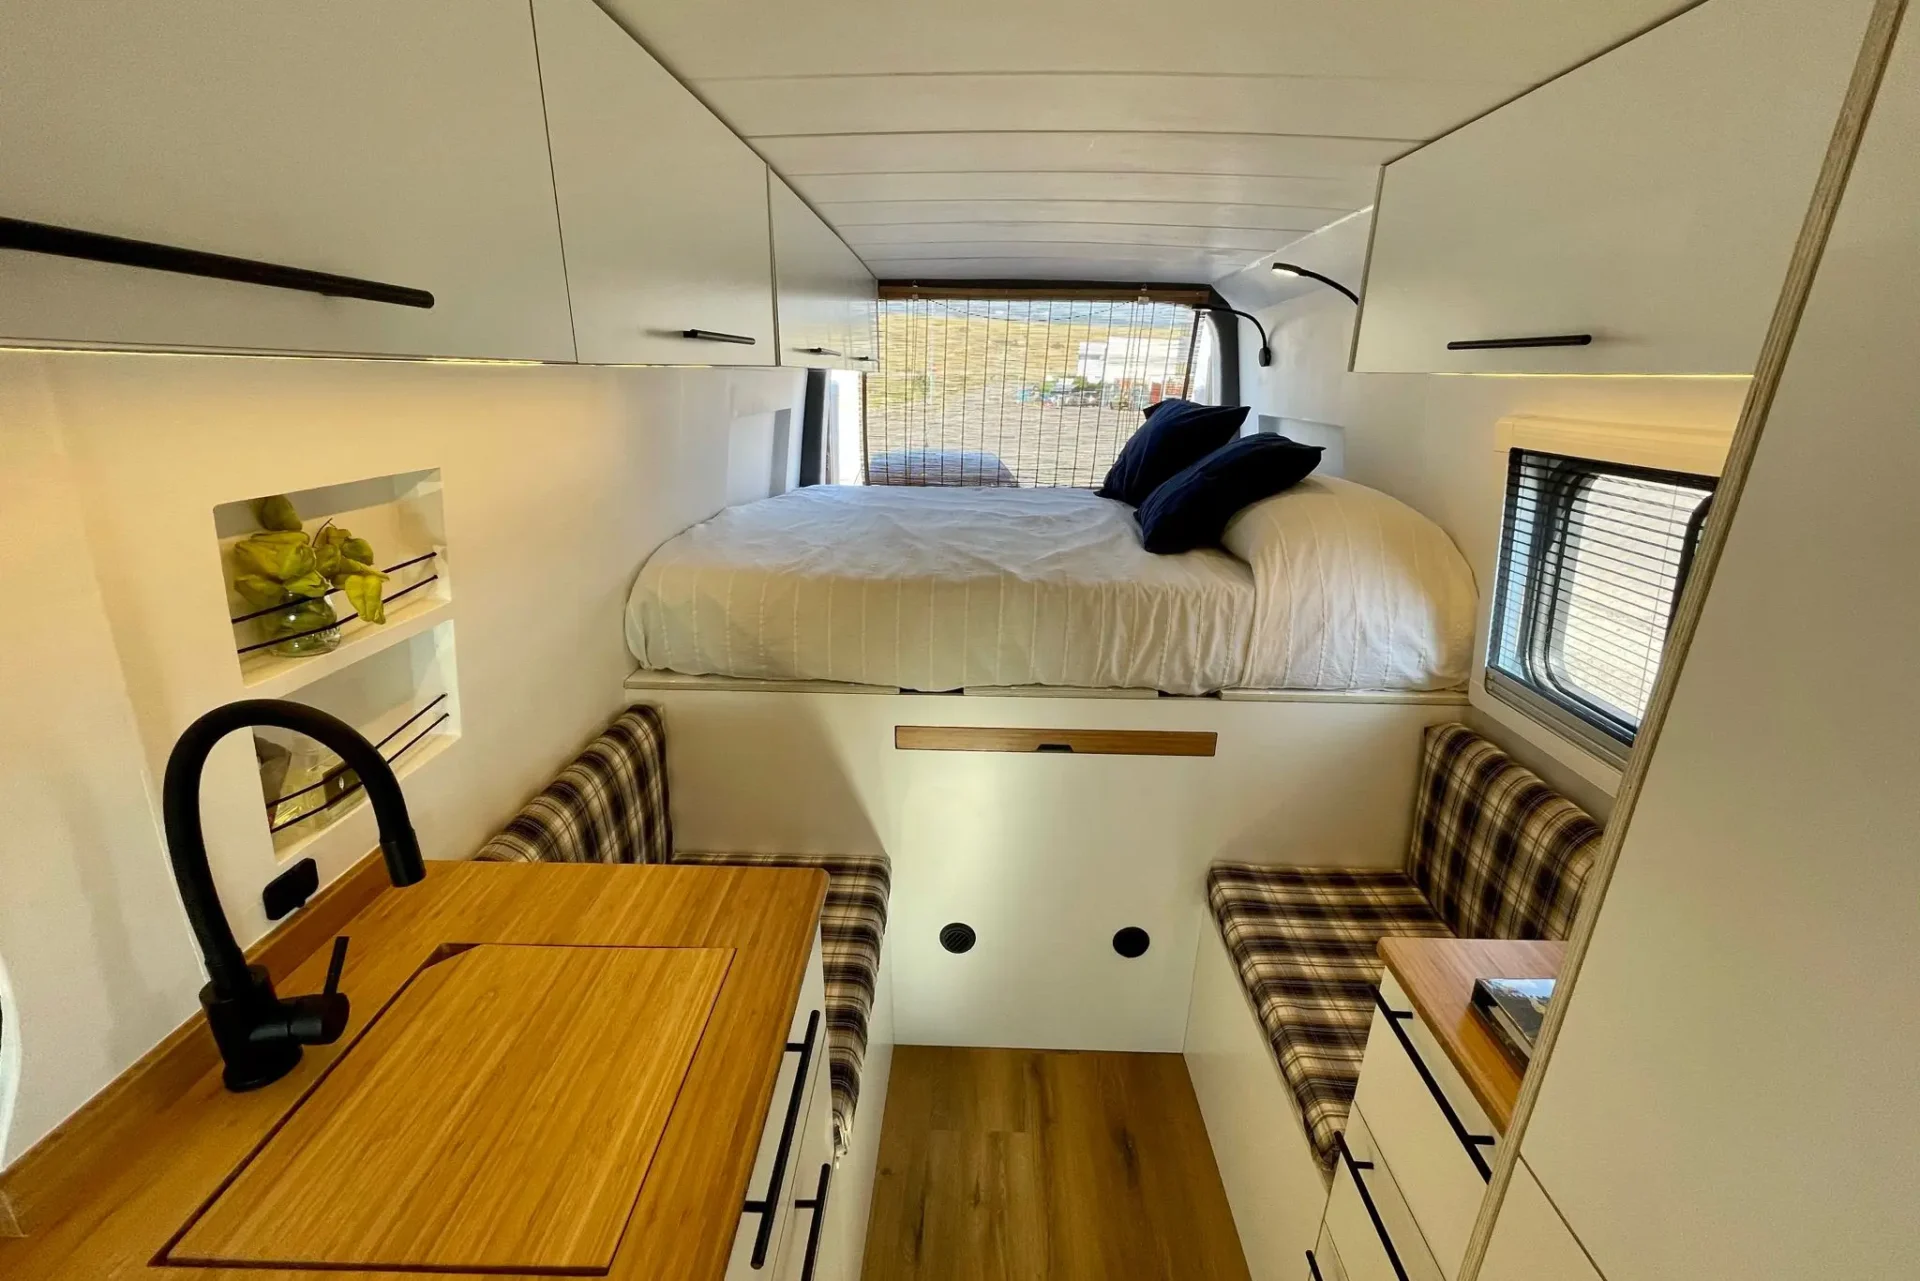 Camper VW Crafter L4H2 diseñada para dos personas, con un interior espacioso y un enorme garaje